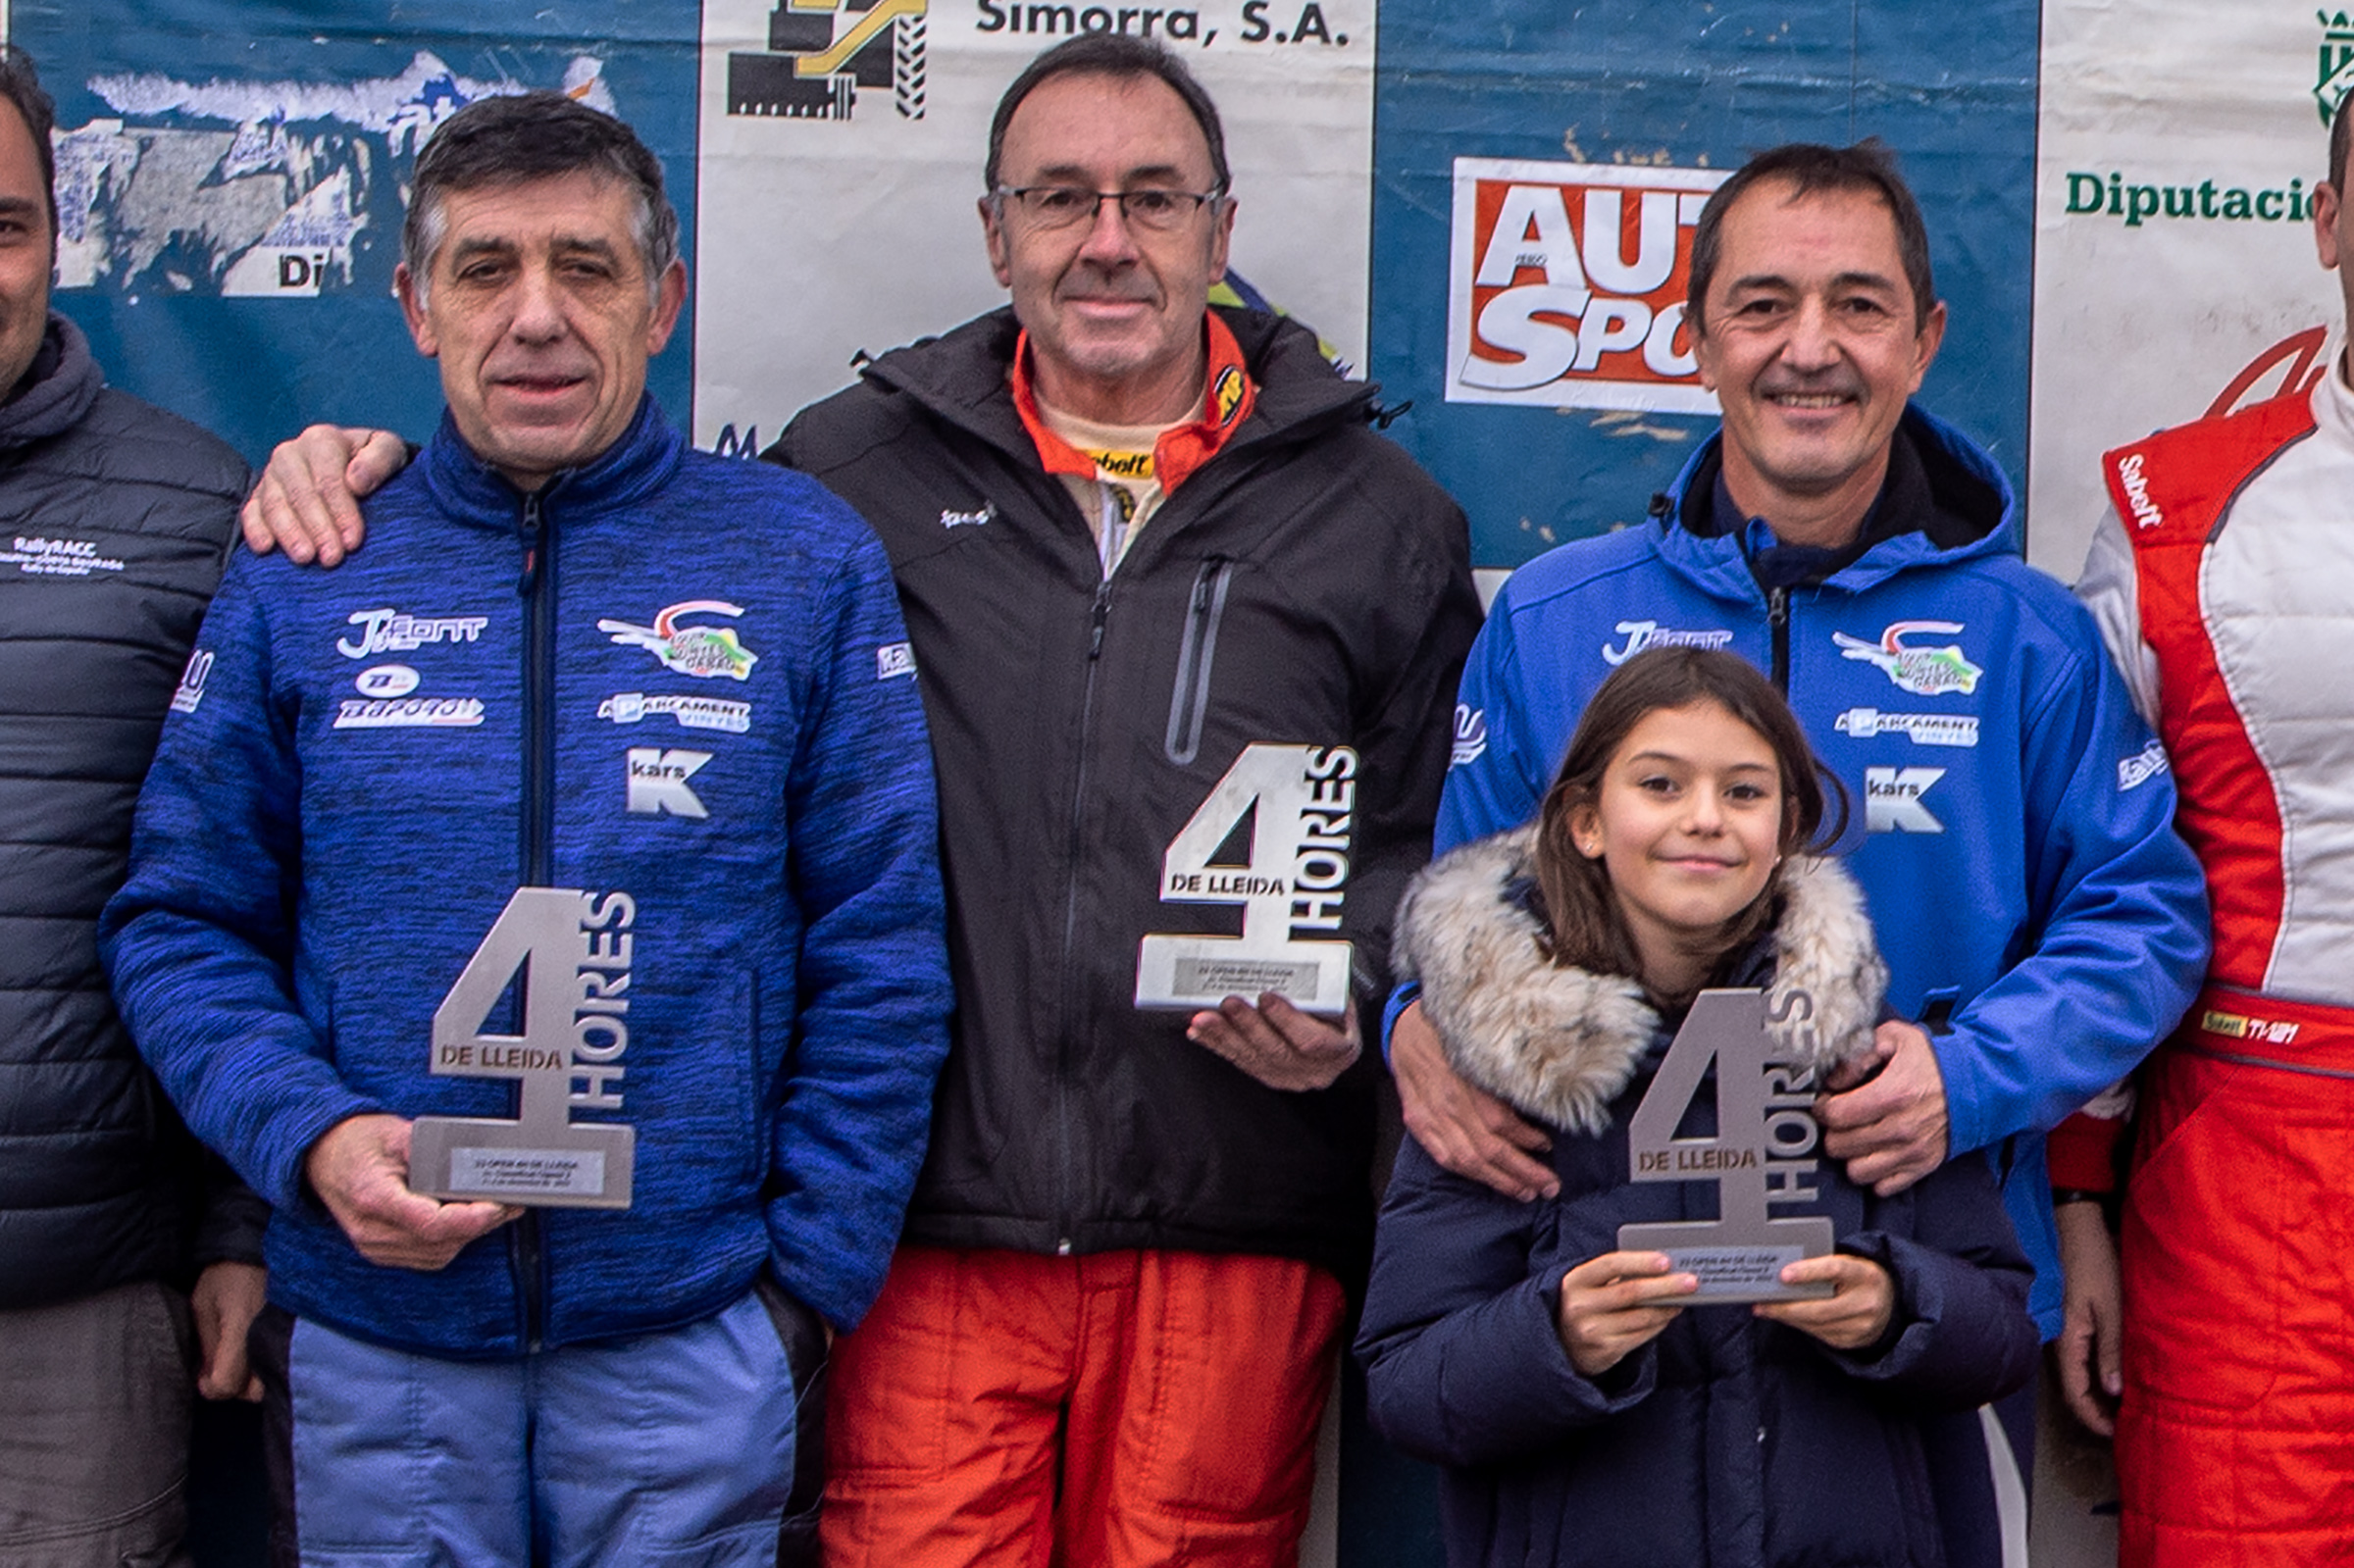 Vinyes i Vinyes jr, finalitzaran la temporada al Circuit de Lleida.